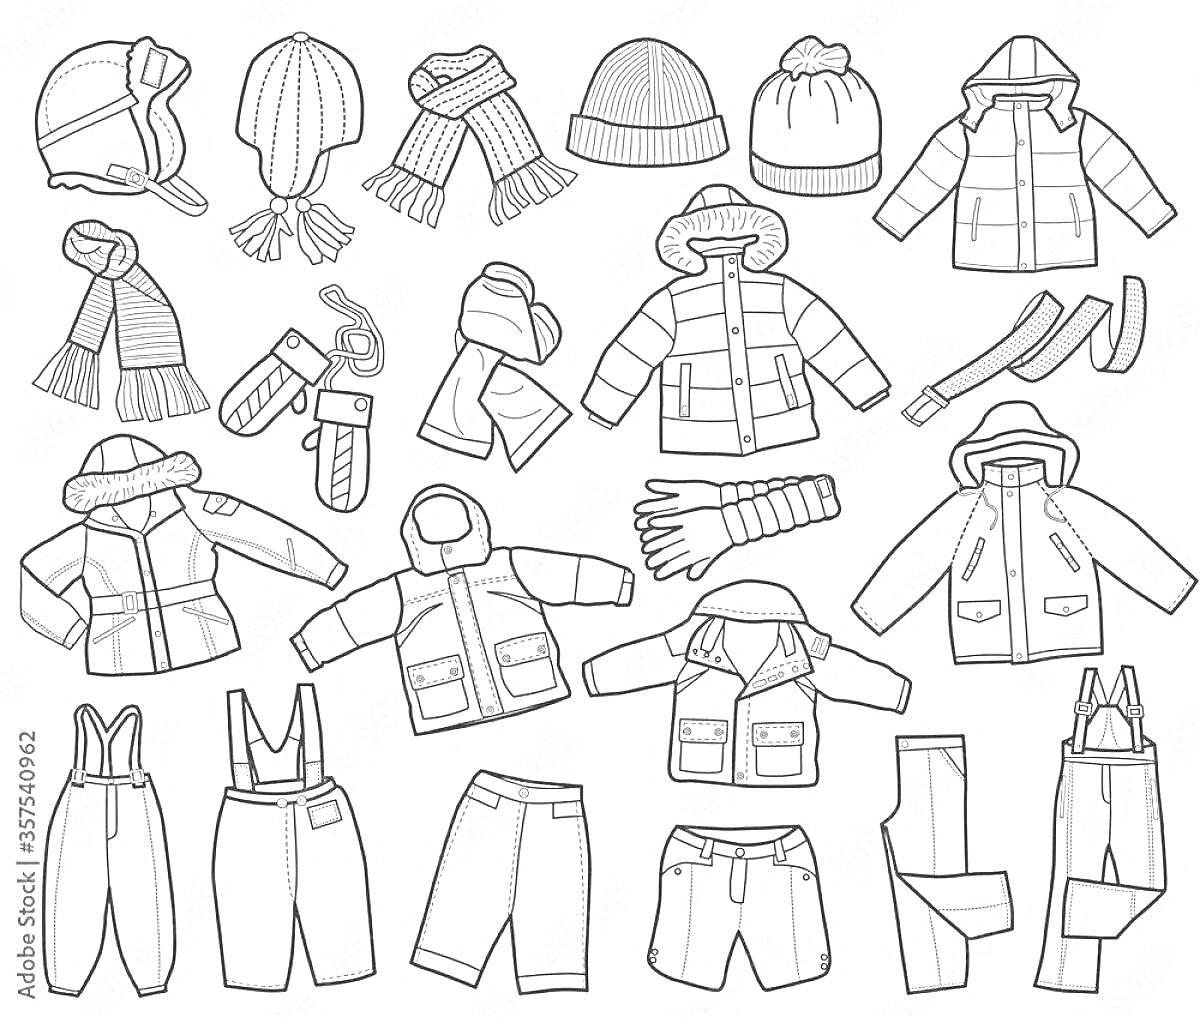 На раскраске изображено: Перчатки, Штаны, Одежда для детей, Зимняя одежда, Одежда для мальчиков, Одежда для девочек, Верхняя одежда